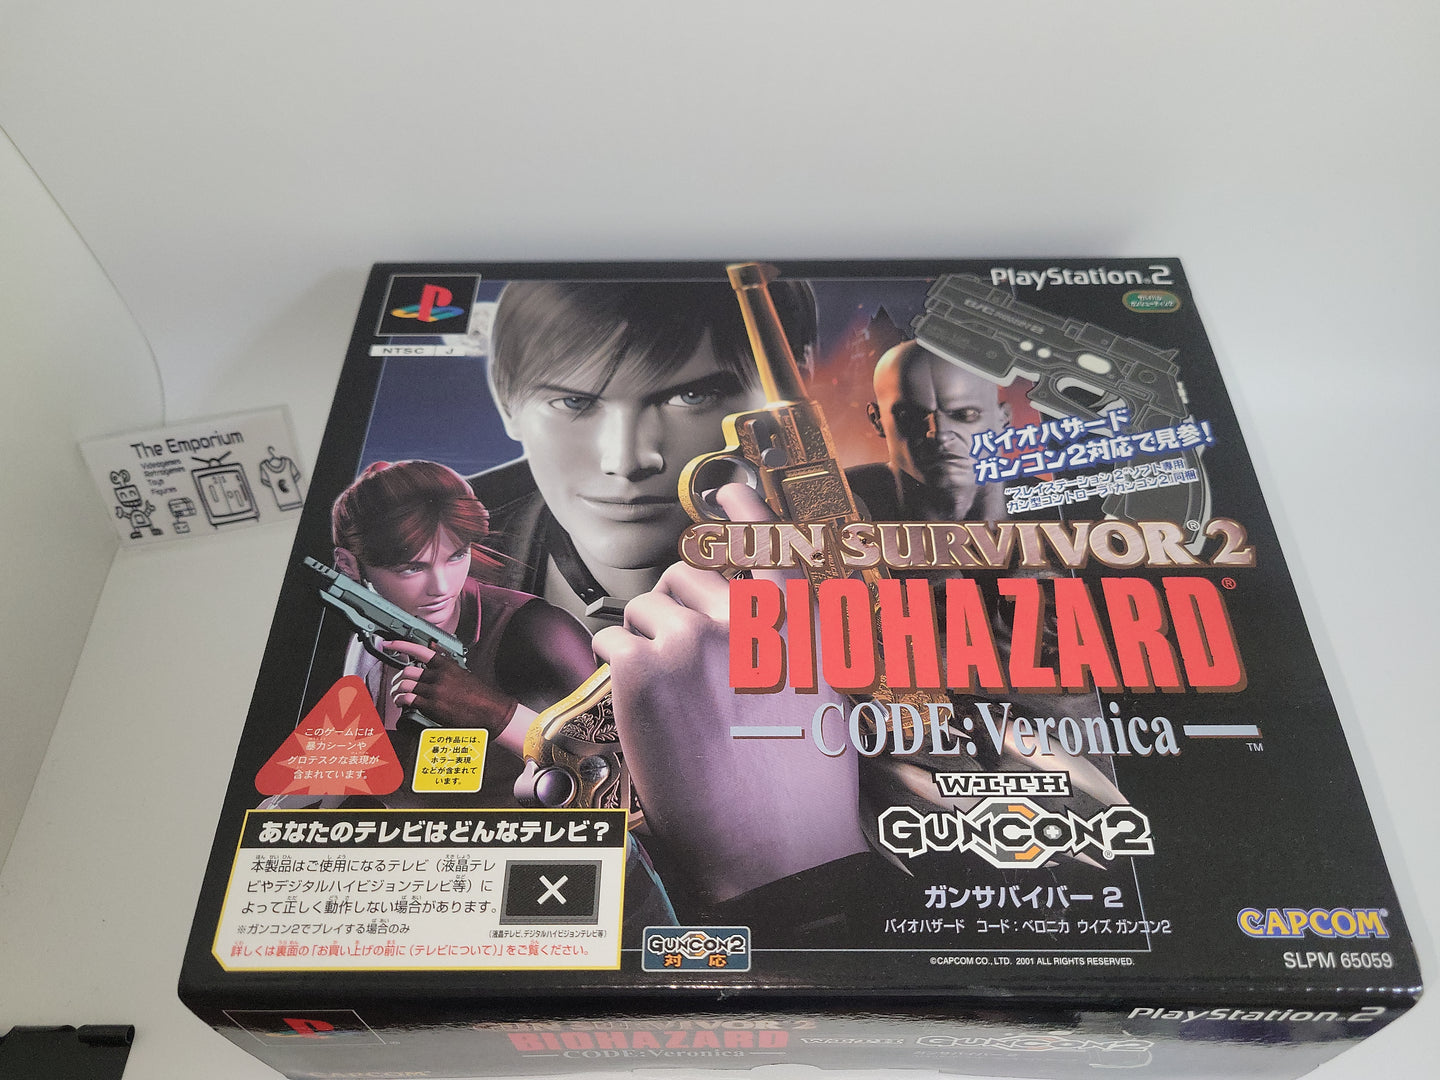 Gun Survivor 2: BioHazard Code: Veronica (w/ GunCon2) - Sony playstation 2